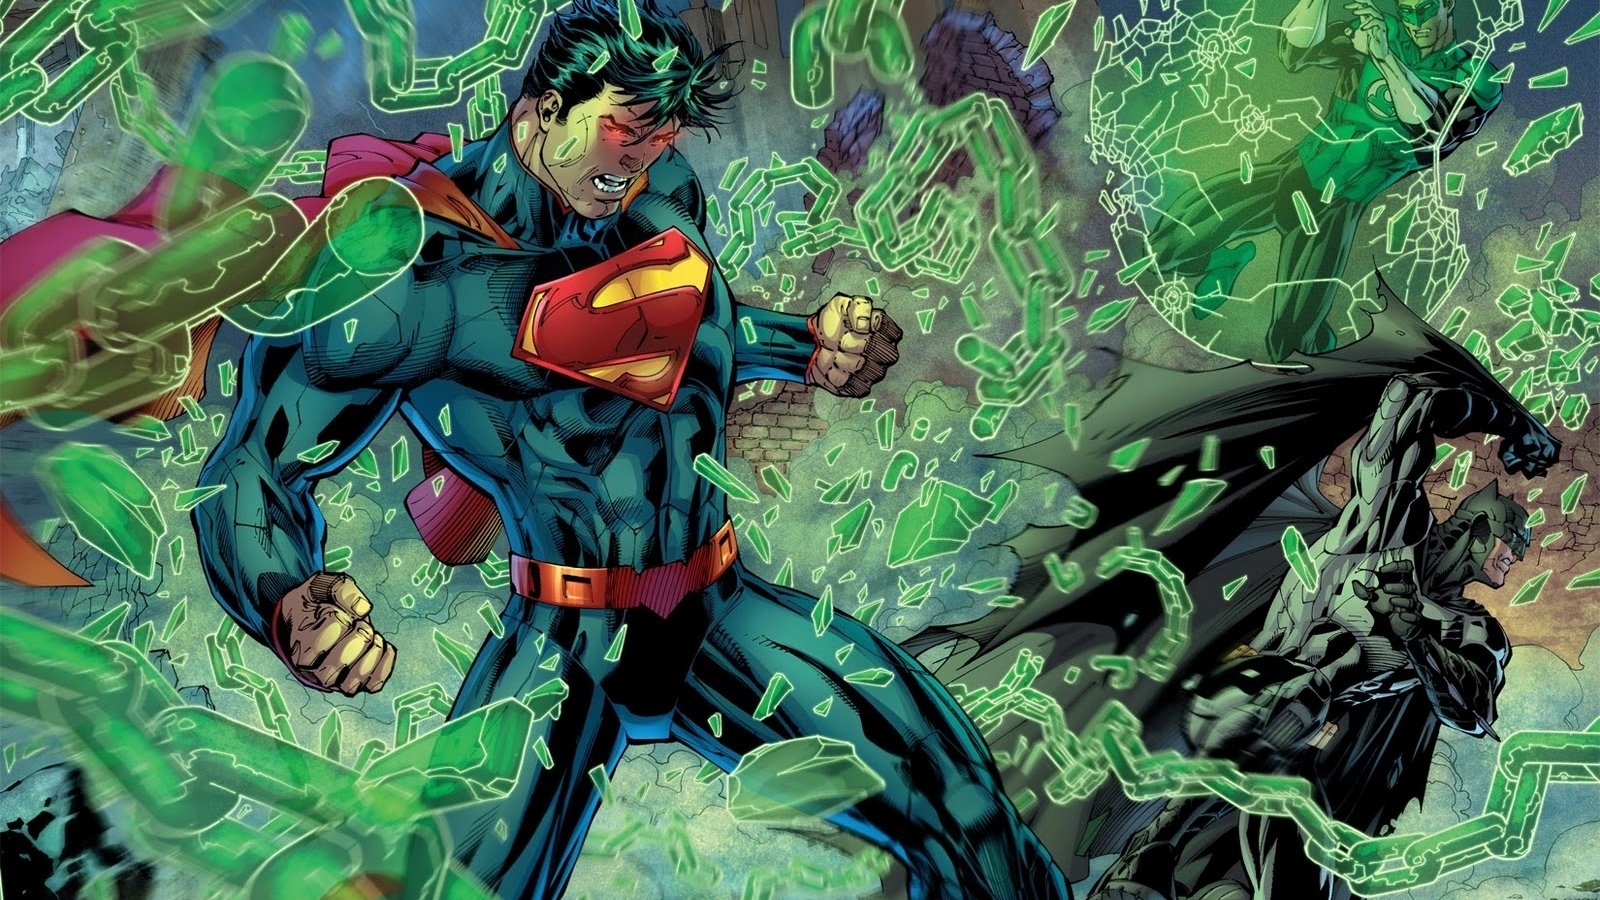 Fondos de Pantalla de Superhéroes de DC Comics, Wallpapers HD